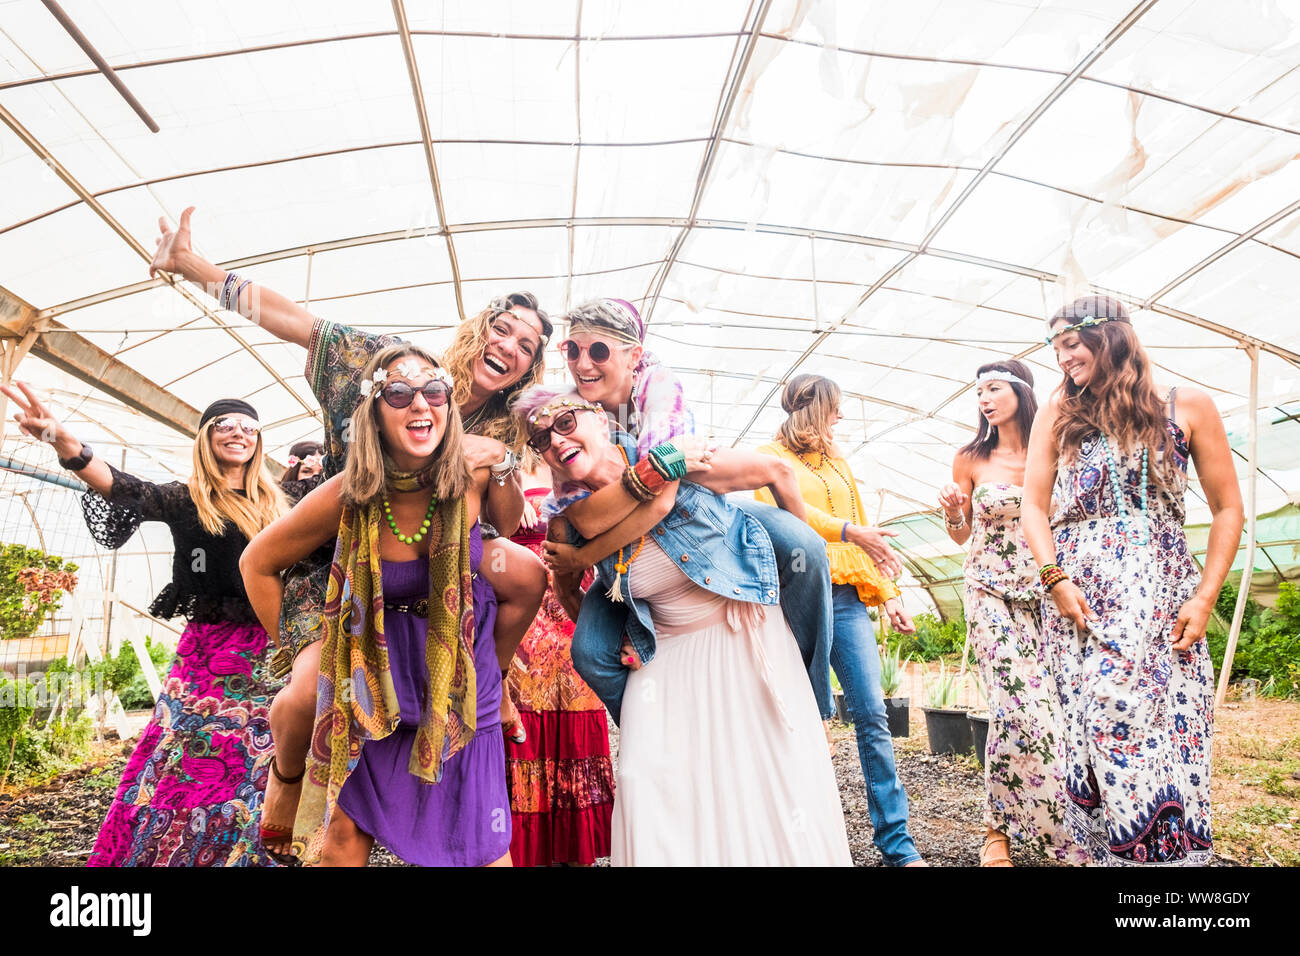 Femmina di persone che ballano insieme in un festival con i tradizionali abiti colorati e vestiti hippy, libertà e alternativa per coloro che godono le attività per il tempo libero, allegro le donne di tutte le età Foto Stock